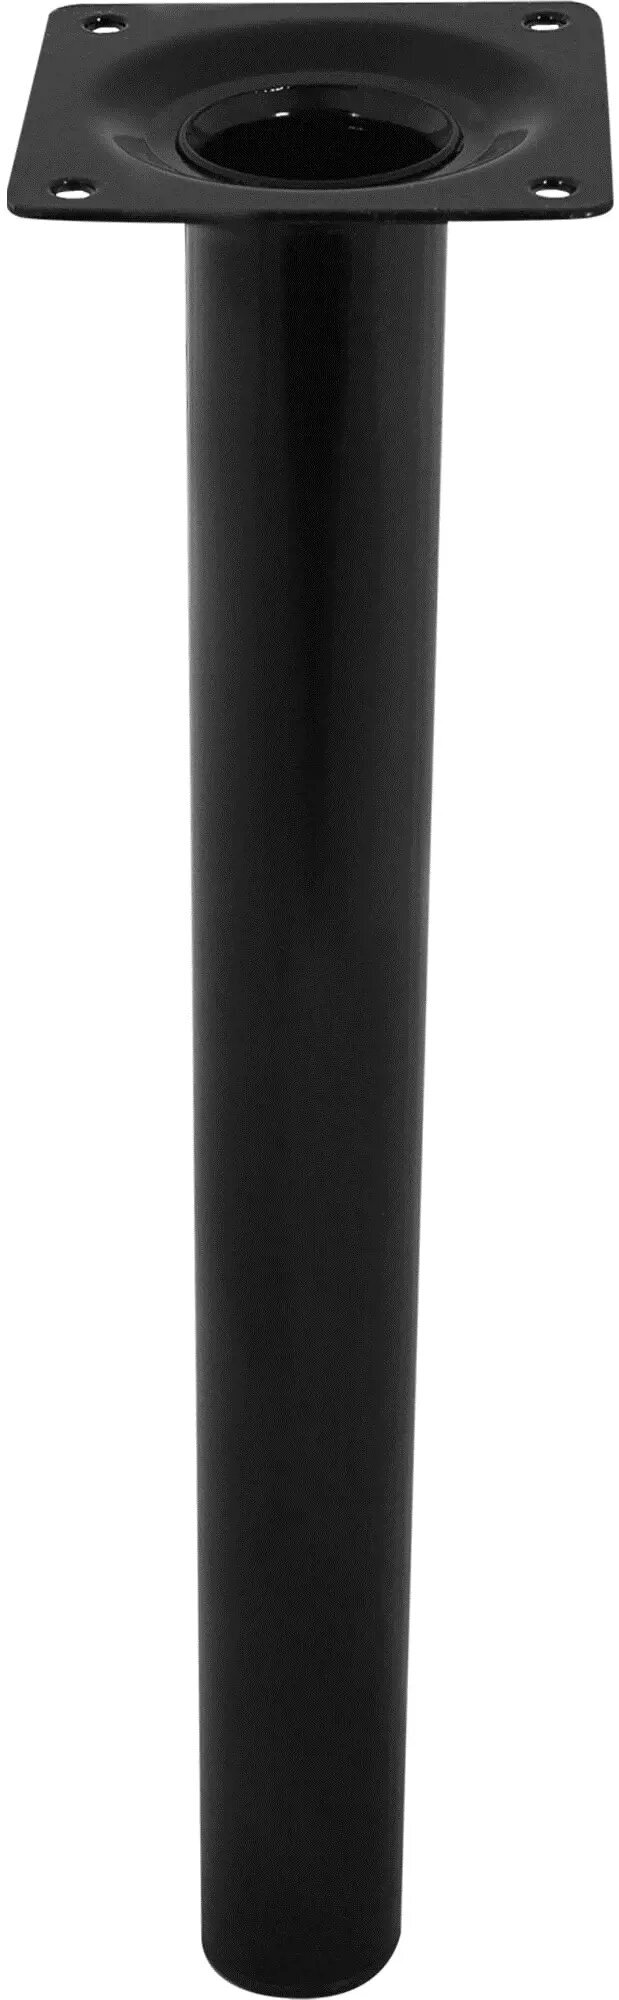 Ножка круглая 300х30 мм сталь максимальная нагрузка 50 кг цвет черный